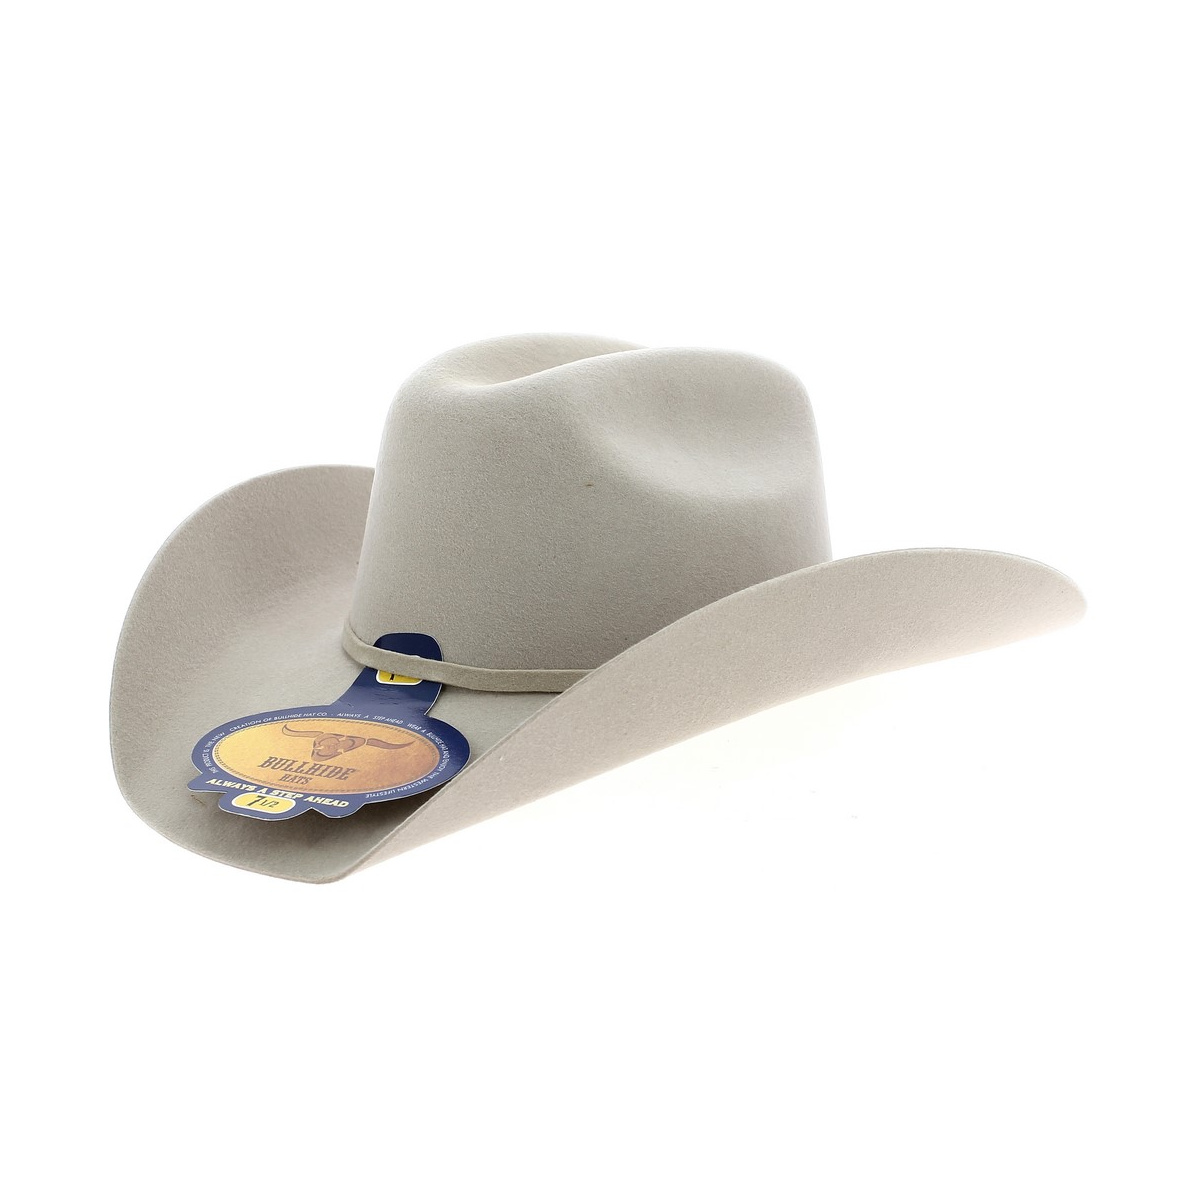 Chapeaux haut de gamme Stetson - tradition américaine